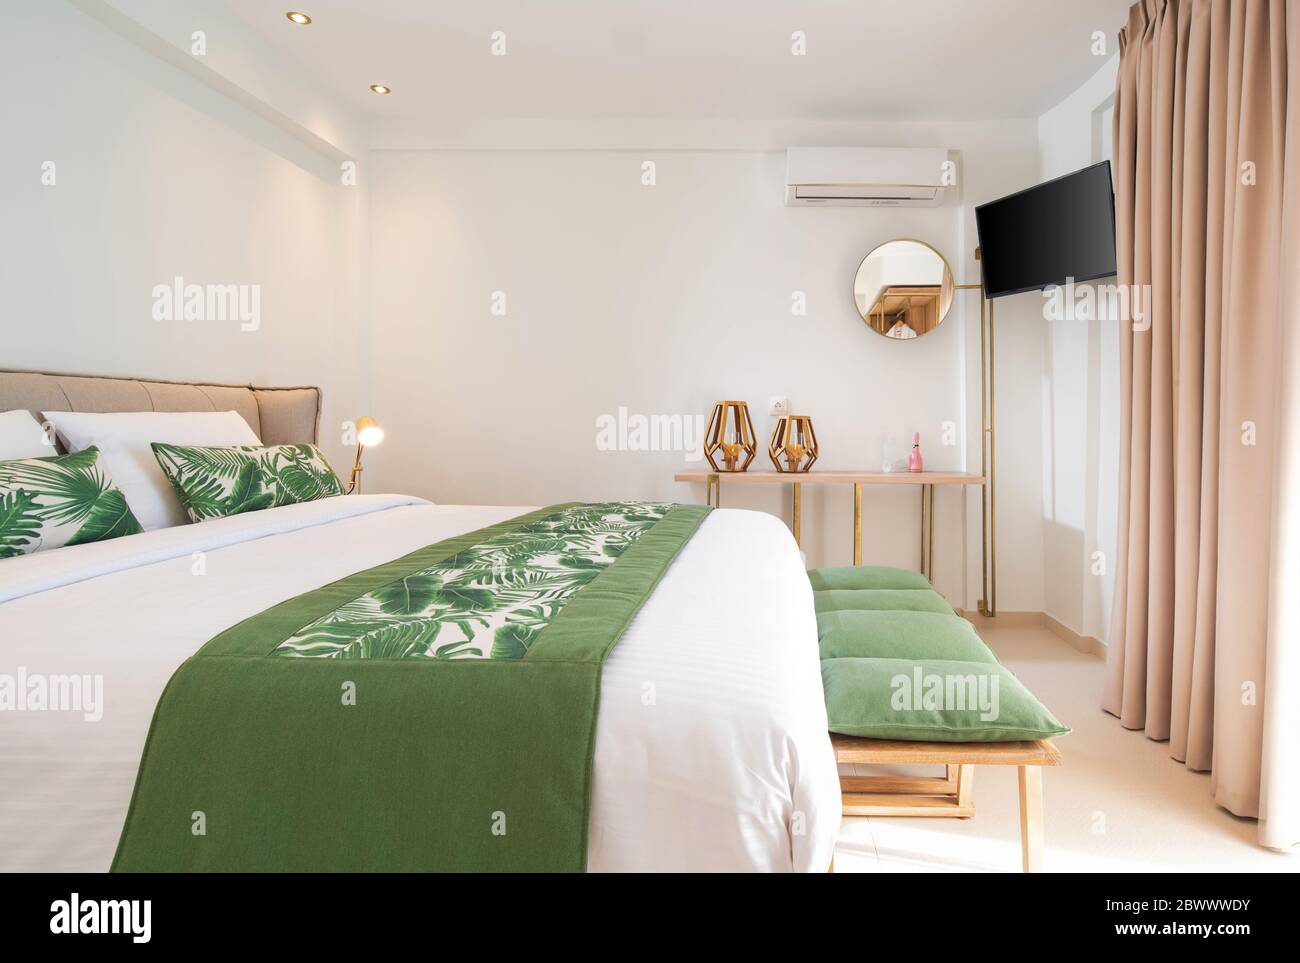 Interni moderni in stile ecologico delle camere dell'hotel con spazio vuoto per le copie delle pareti. Vista laterale della camera da letto bianca con lenzuola di foglie di palma verdi Foto Stock